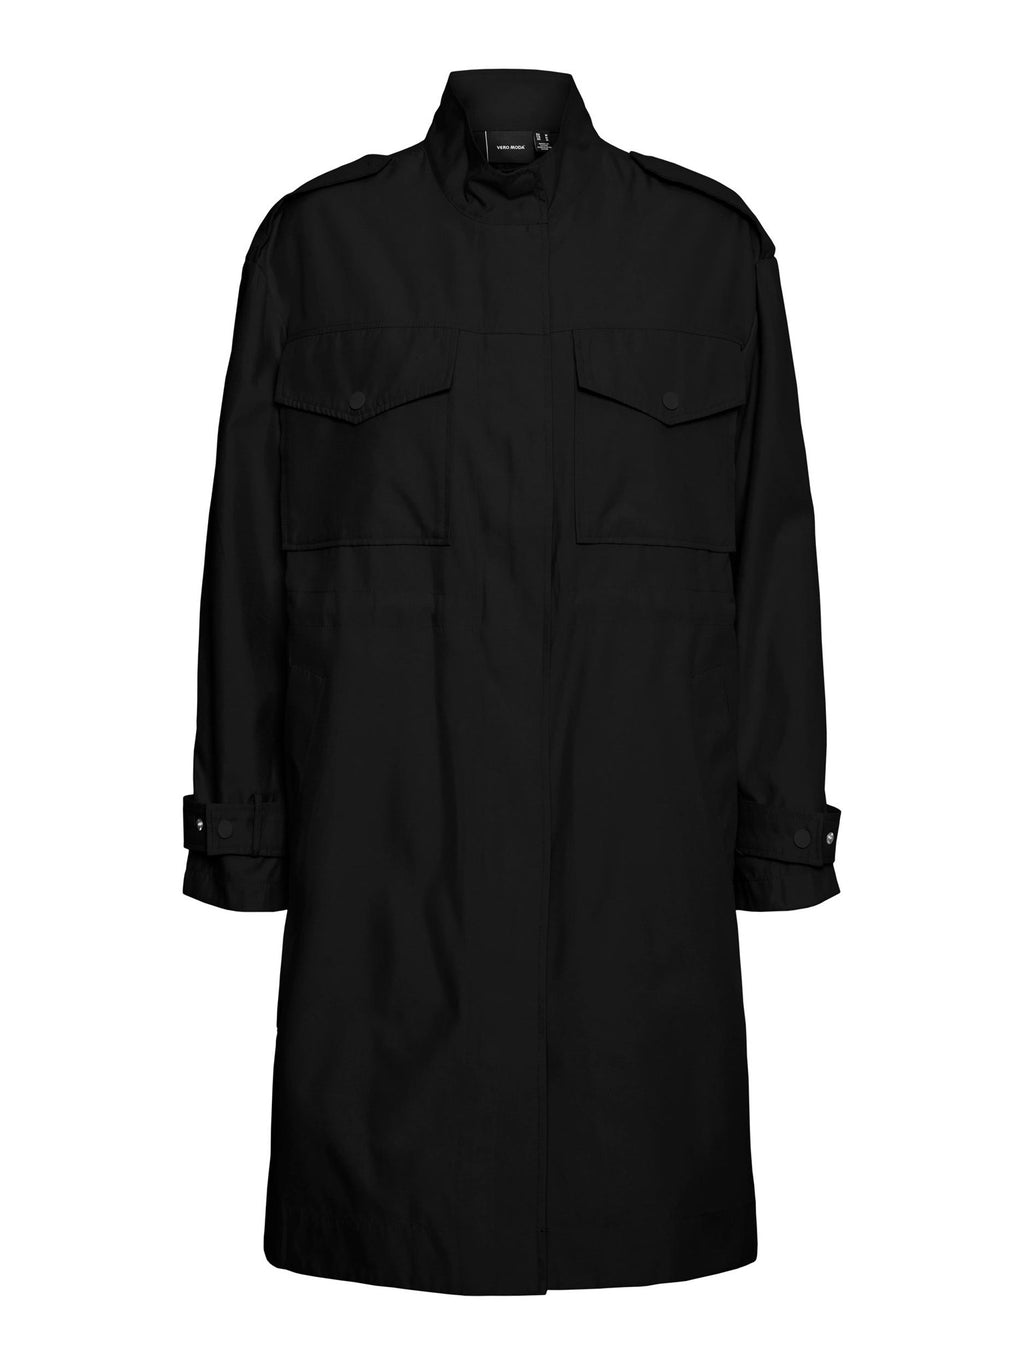 Luxa Coat - Black